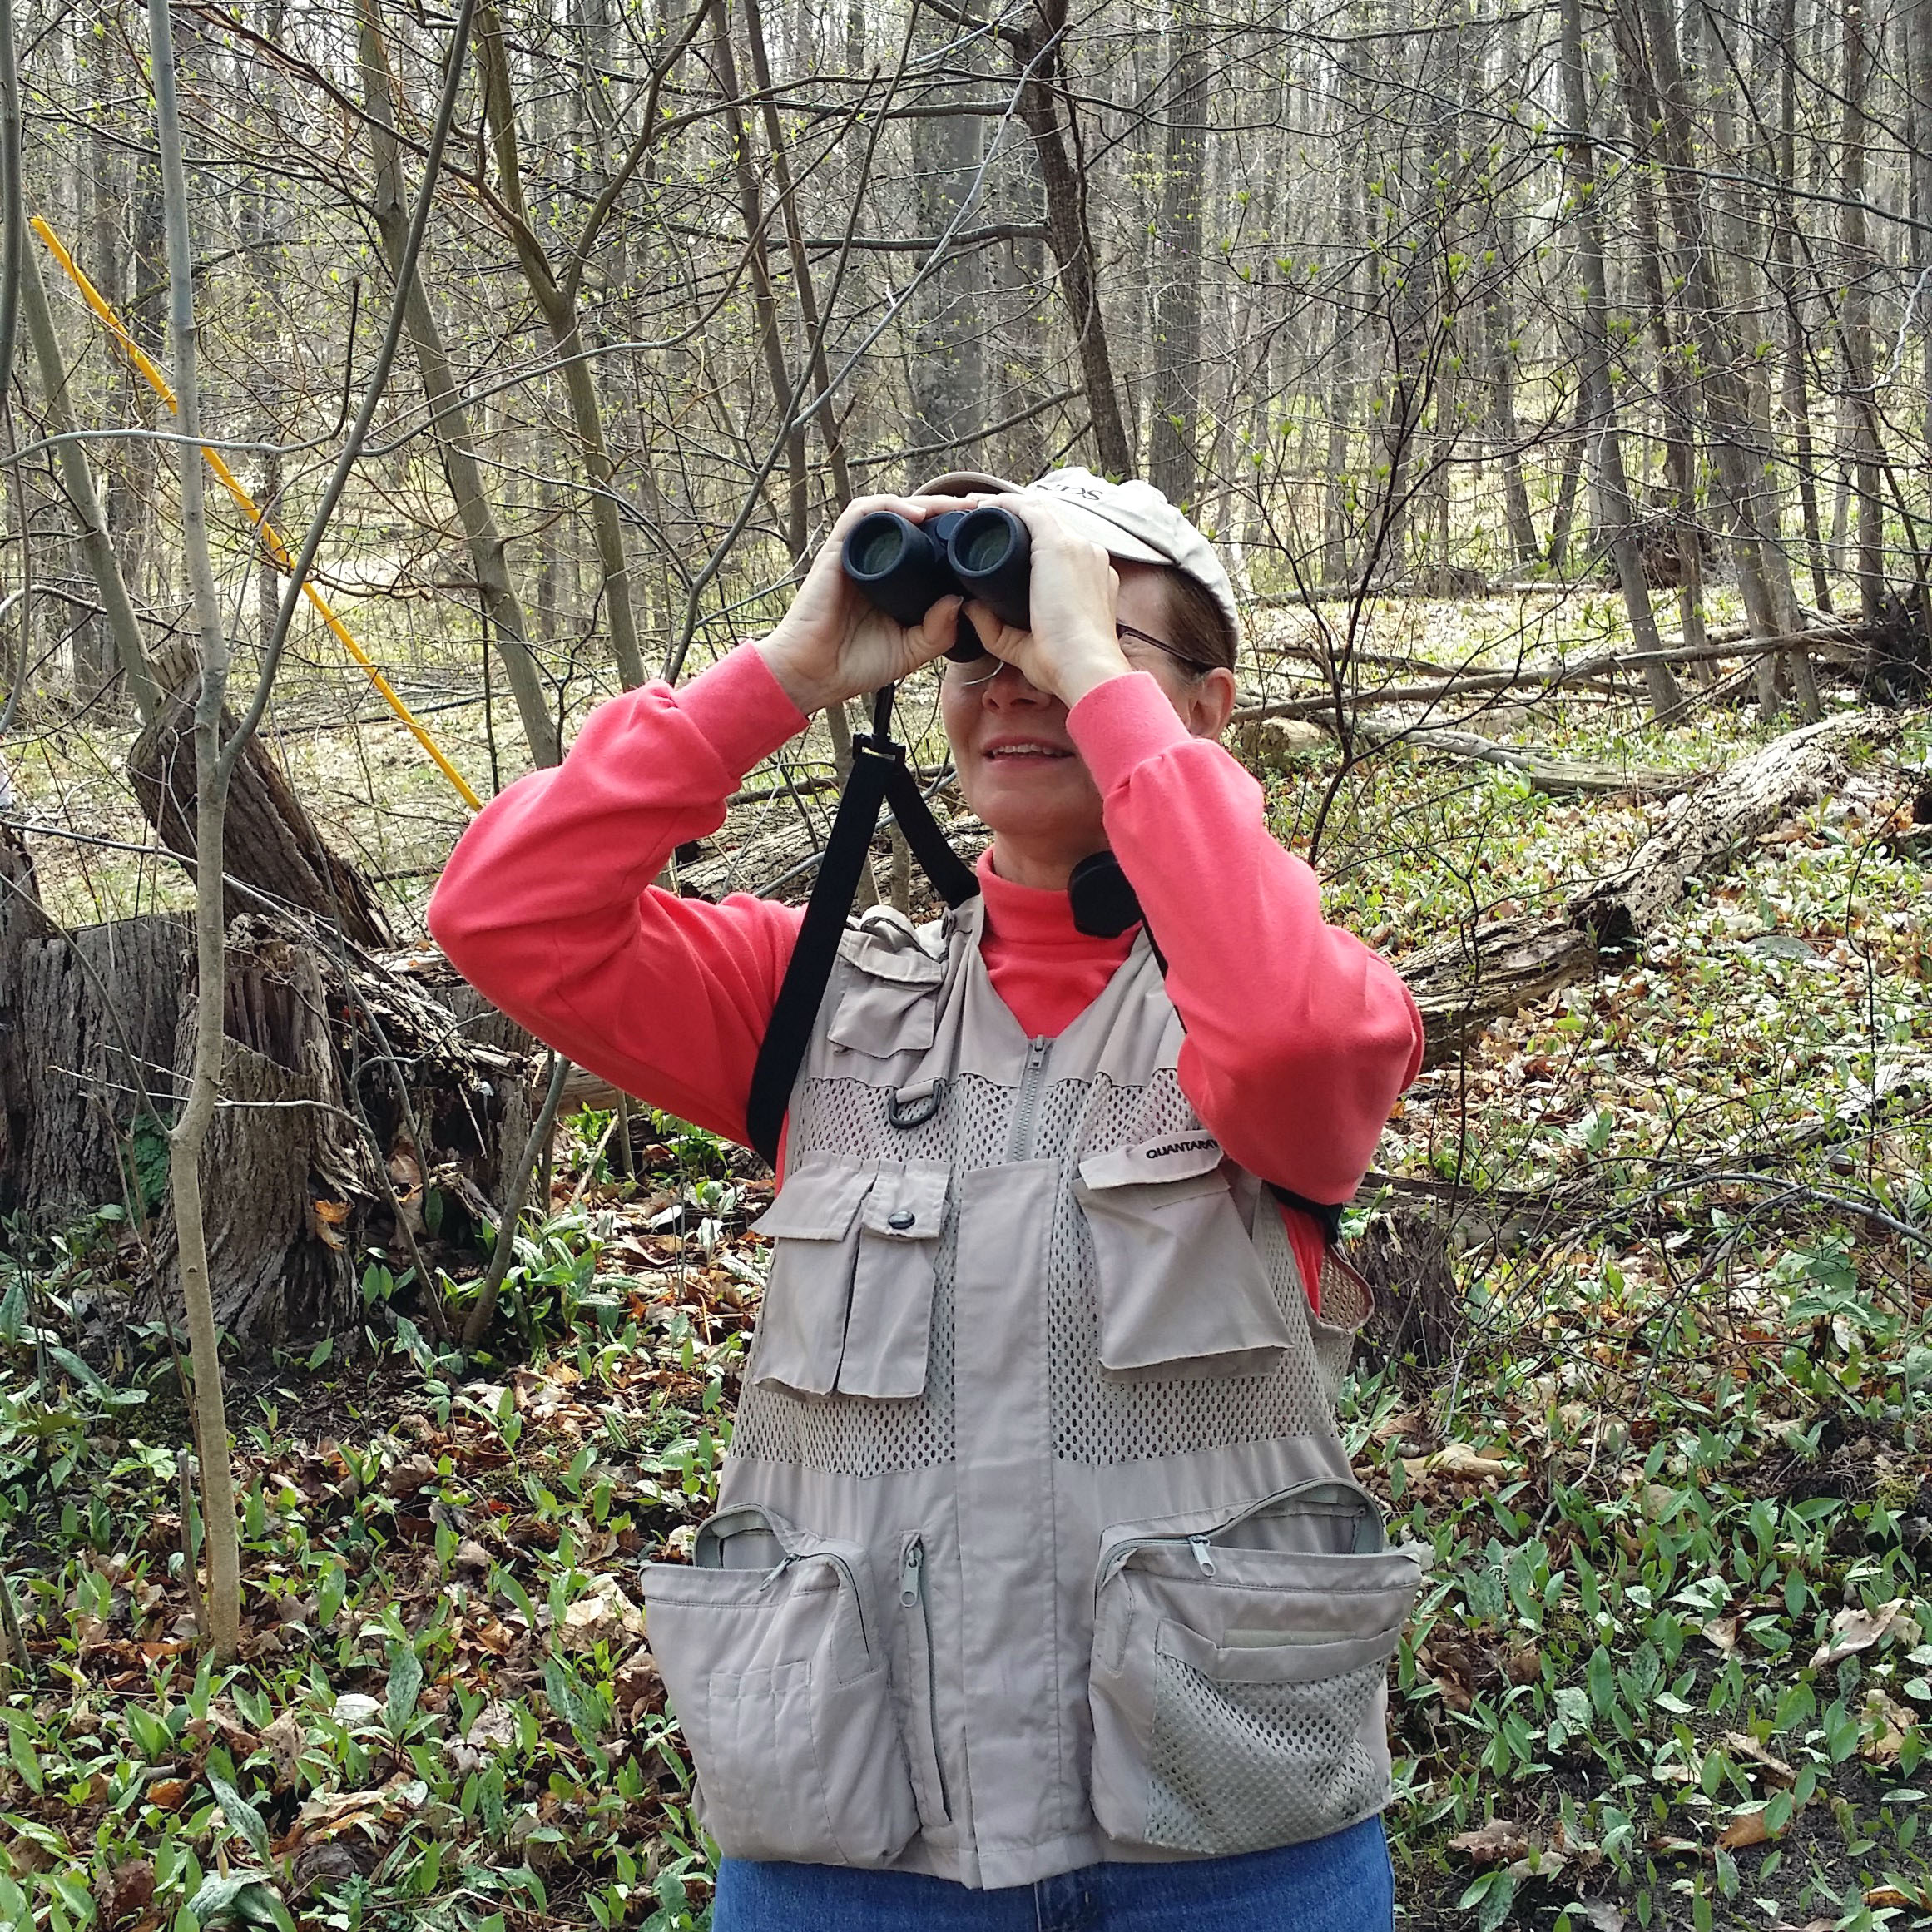 The Petoskey Regional Audubon Society will lead a bird walk through Elvyn Lea woods on June 7